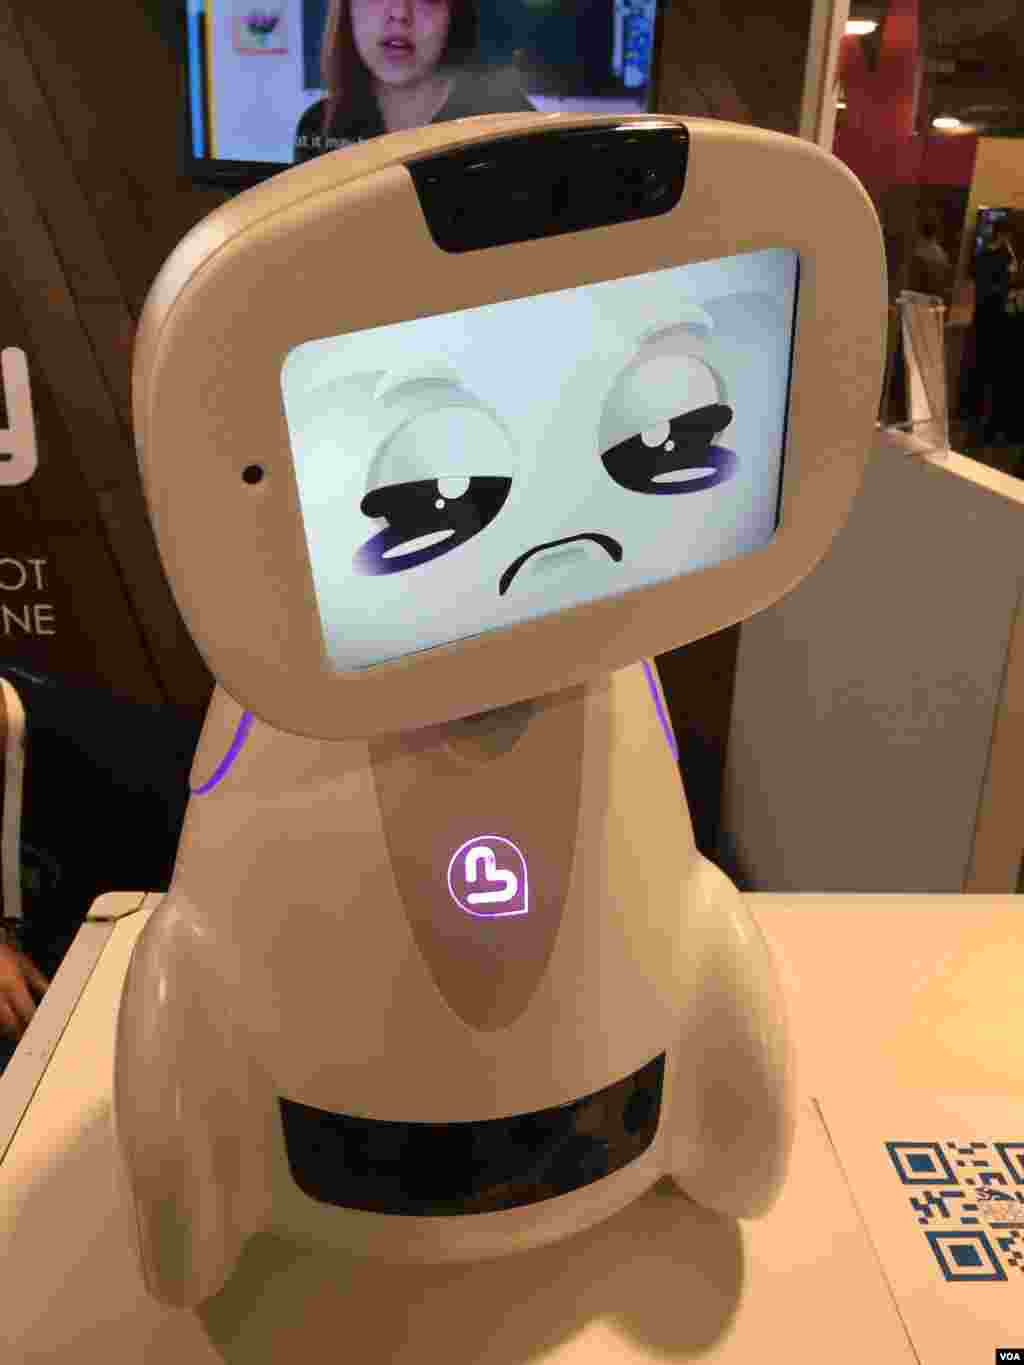  ربات ؛بادی؛ به معنی رفیق، یک ربات خانگی متصل به اینترنت است که میتواند با بچه ها قایم باشک بازی کند و یا به آنها ریاضی درس دهد. 